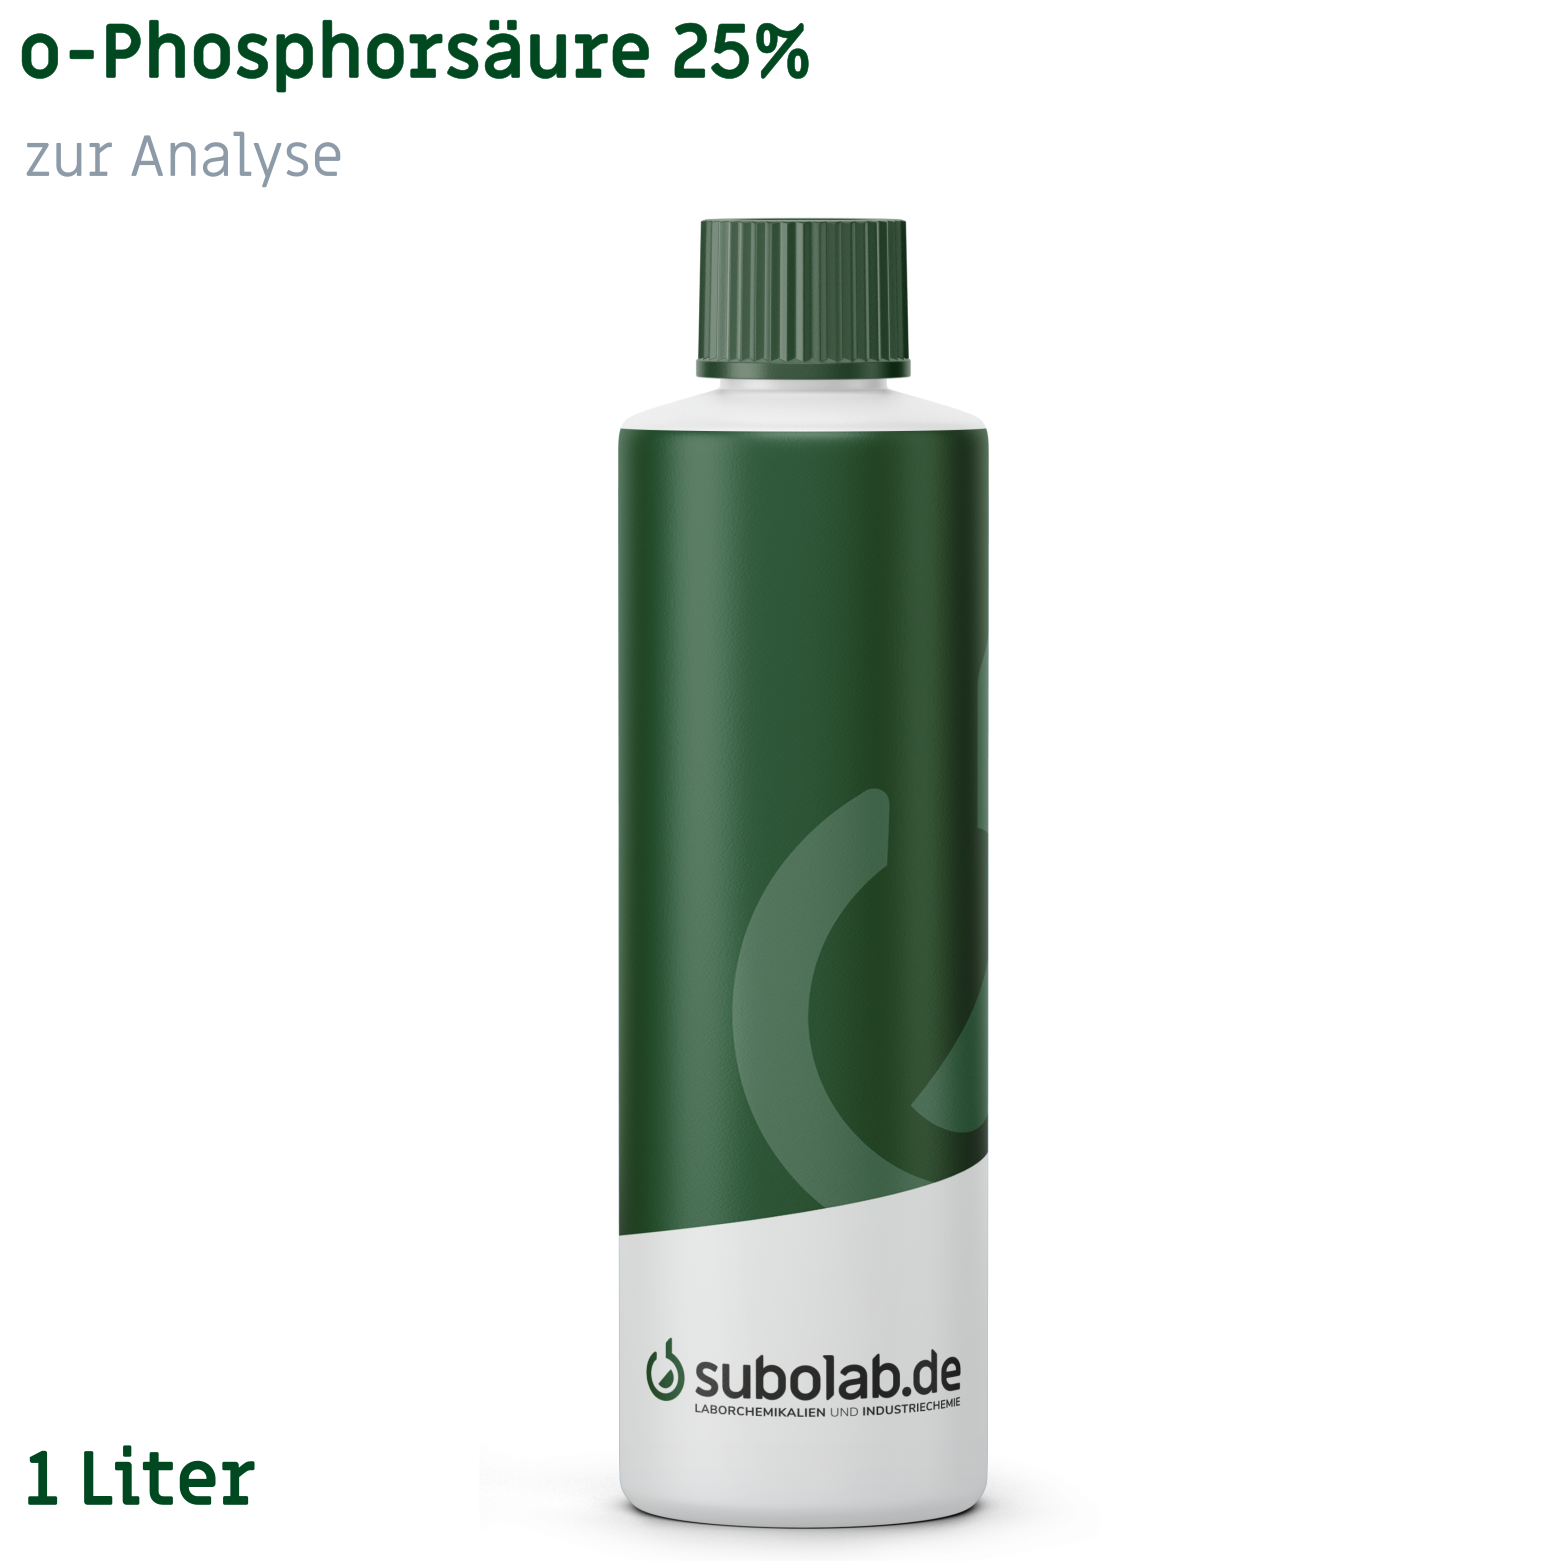 Bild von o-Phosphorsäure 25% zur Analyse (1 Liter)